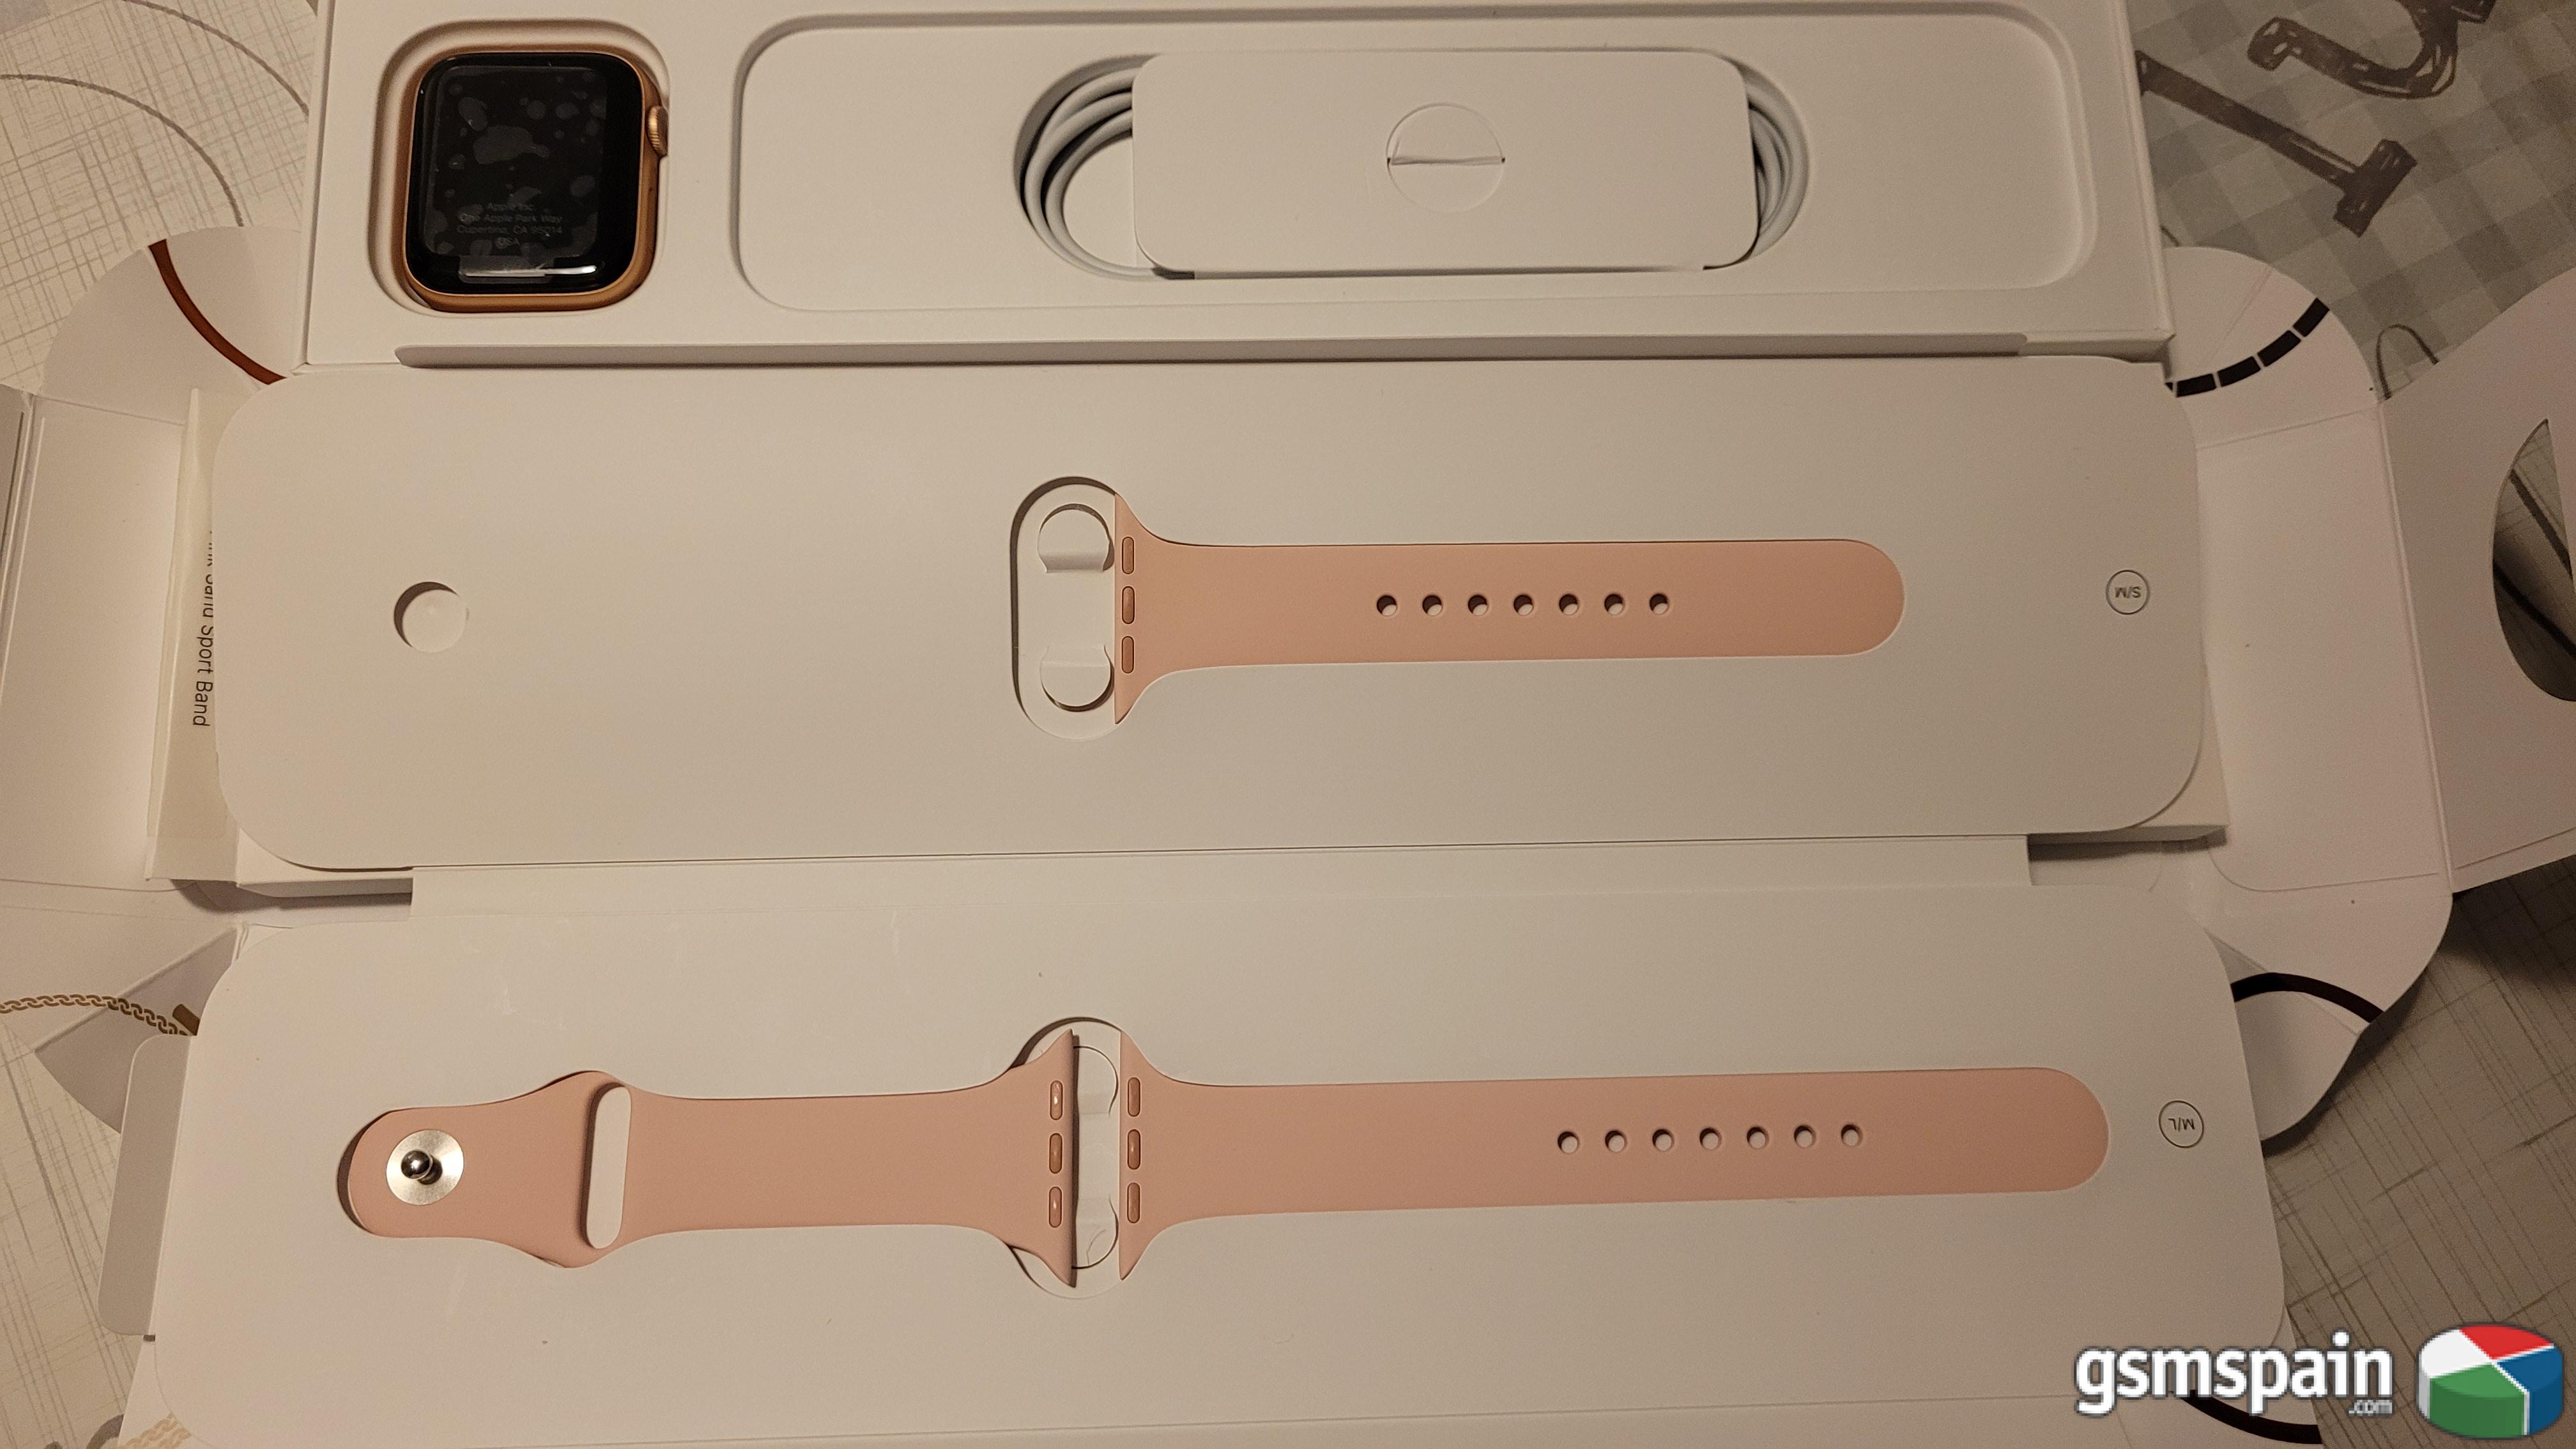 [VENDO] Apple Watch series 6 44mm oro Como nuevo+factura+2 aos garantia** por 400